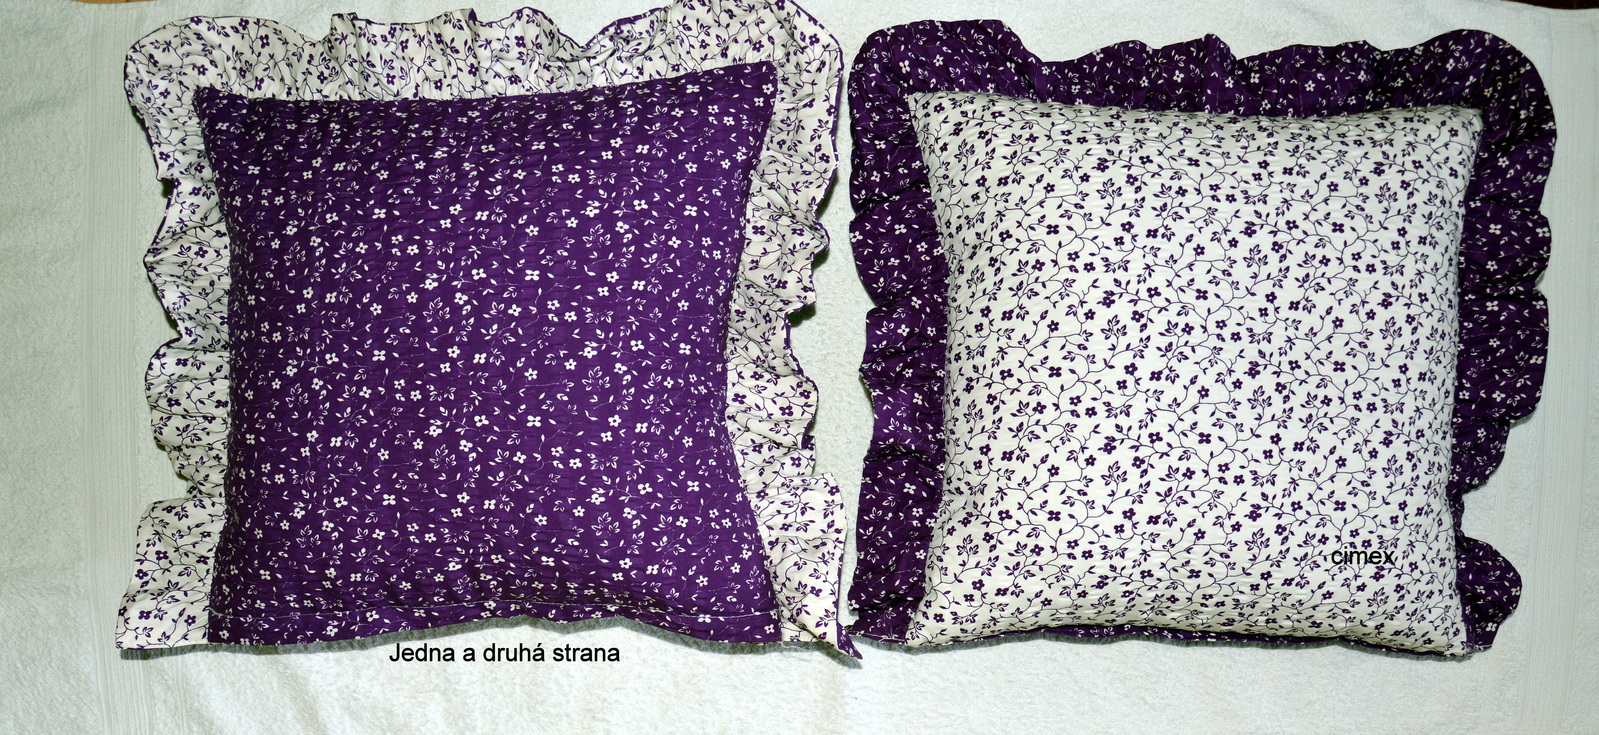 Dekorační povlak s volánem-Bílá kytička na fialovém negativ pozitiv